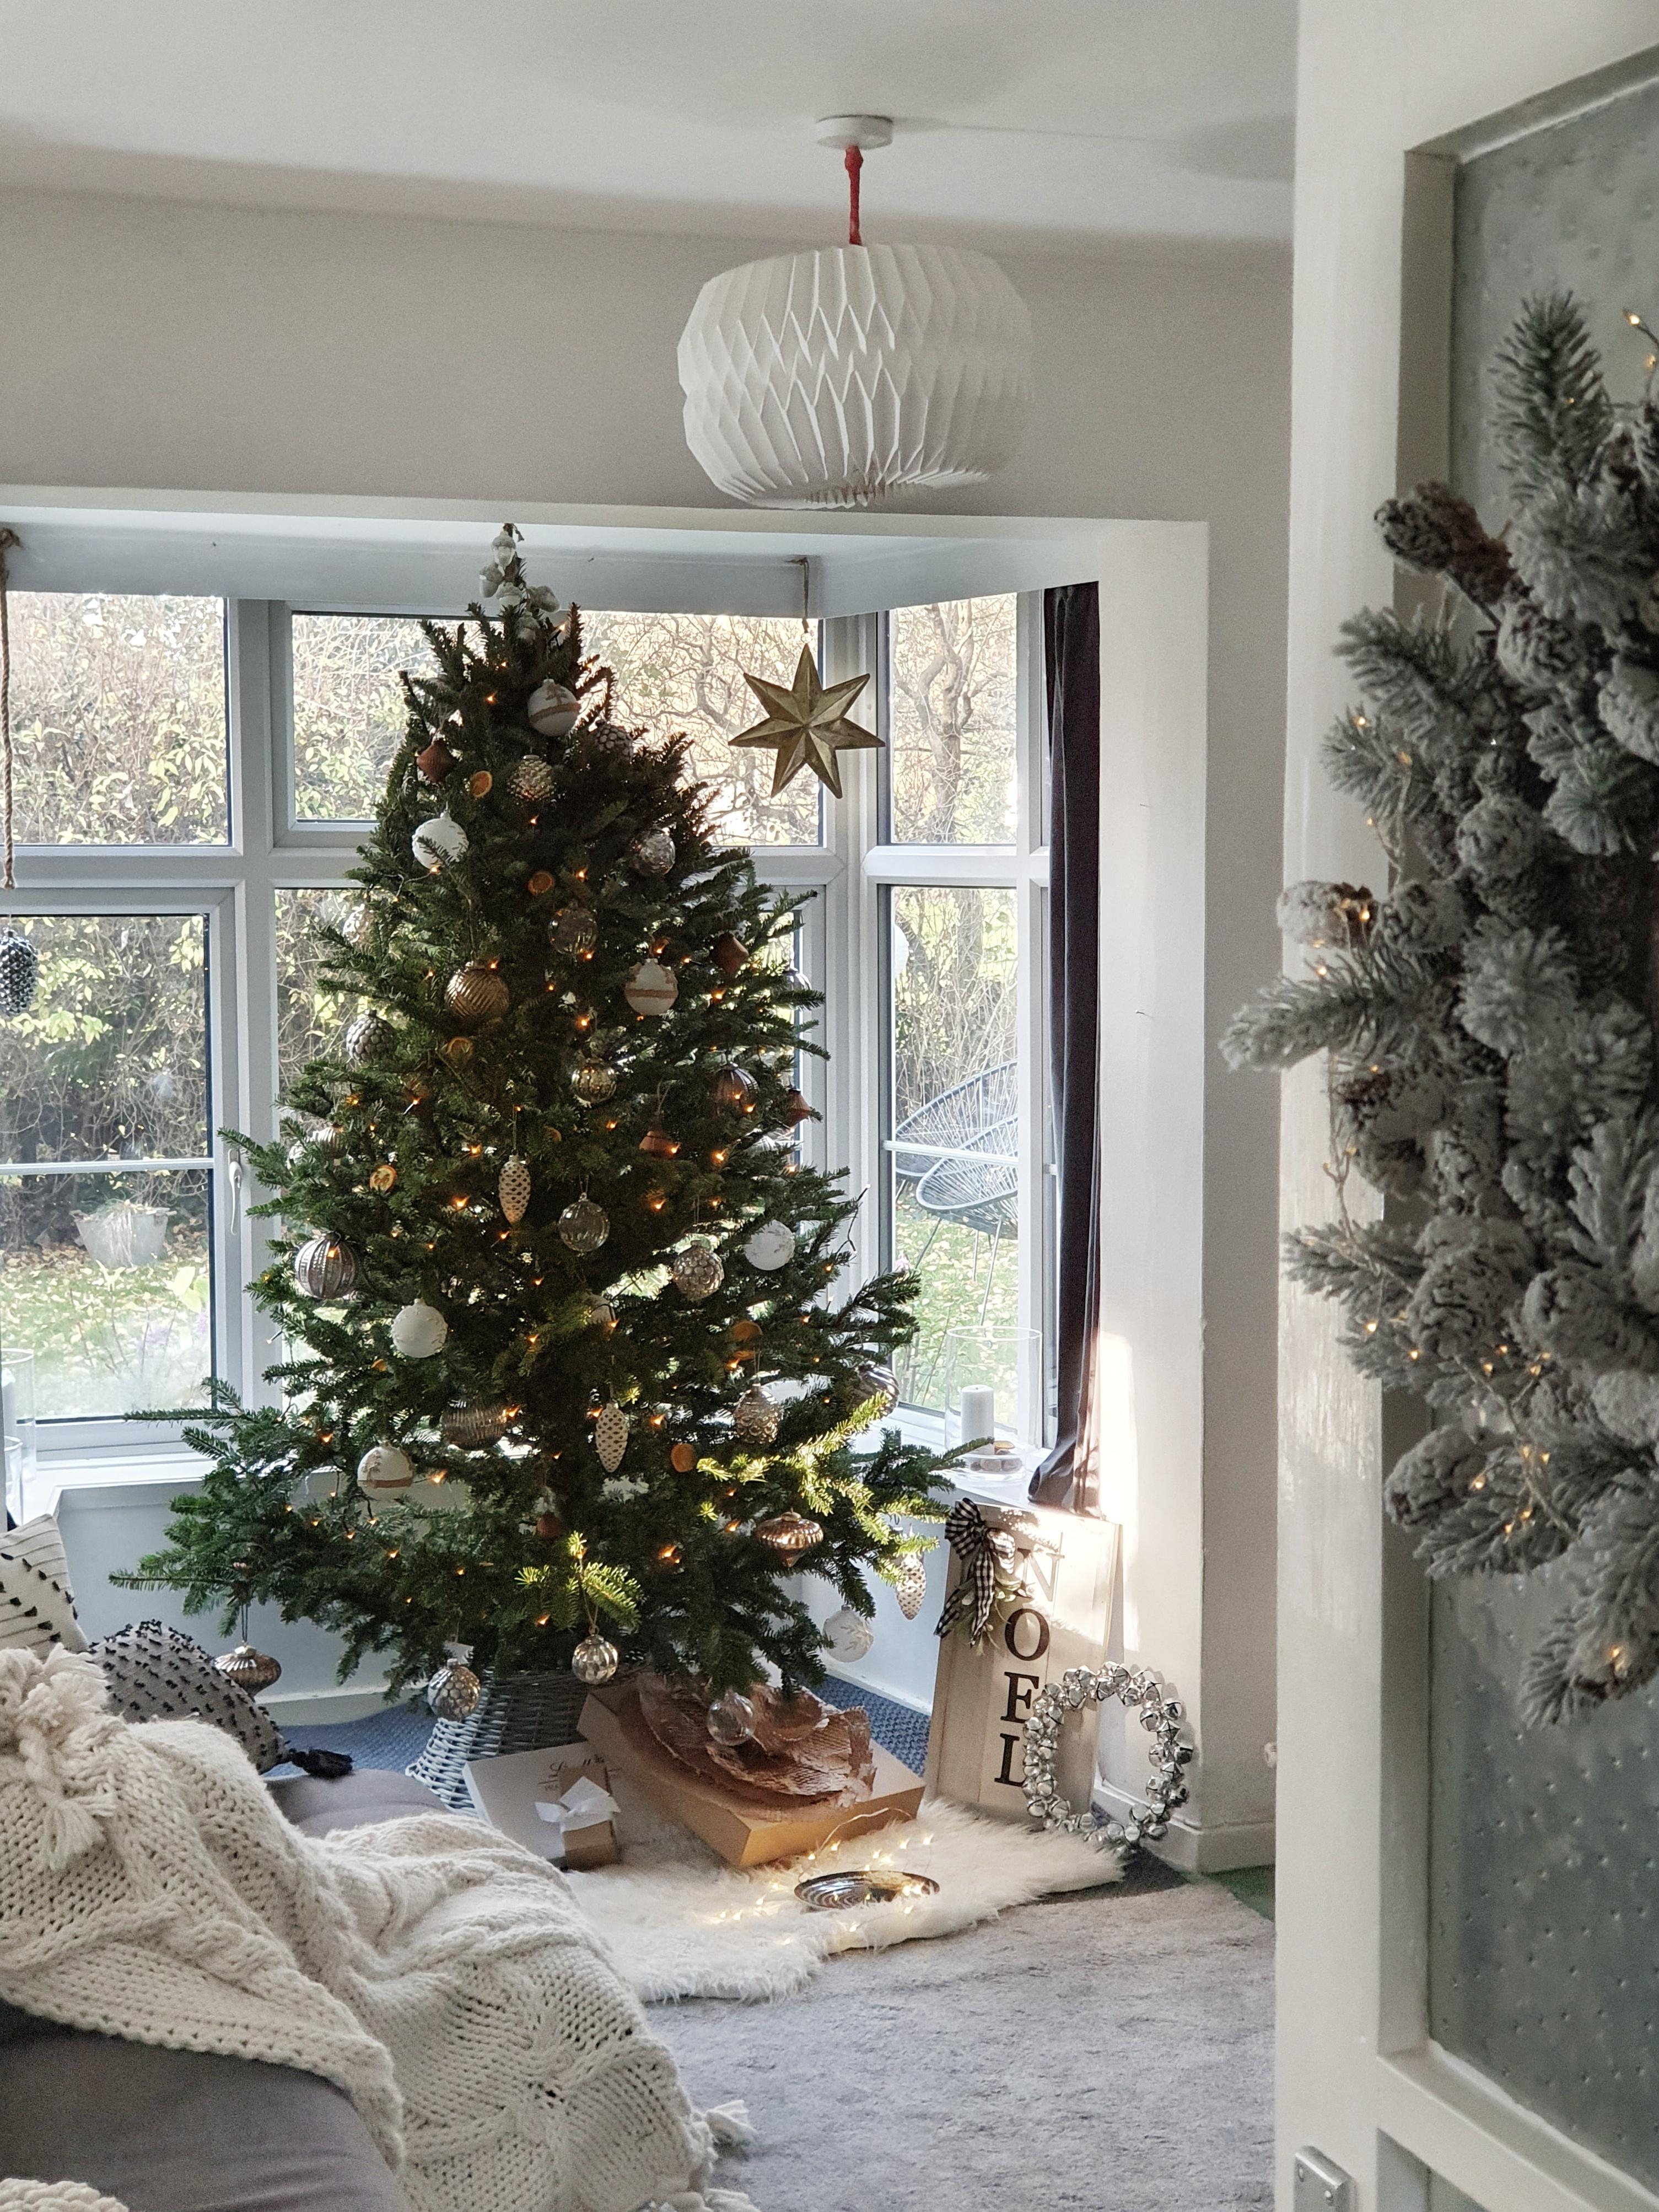 #interior #cozy #hygge #wohnzimmer #altbau #england #weihnachtsbaum #weihnachtsdeko #weihnachten #couchliebt